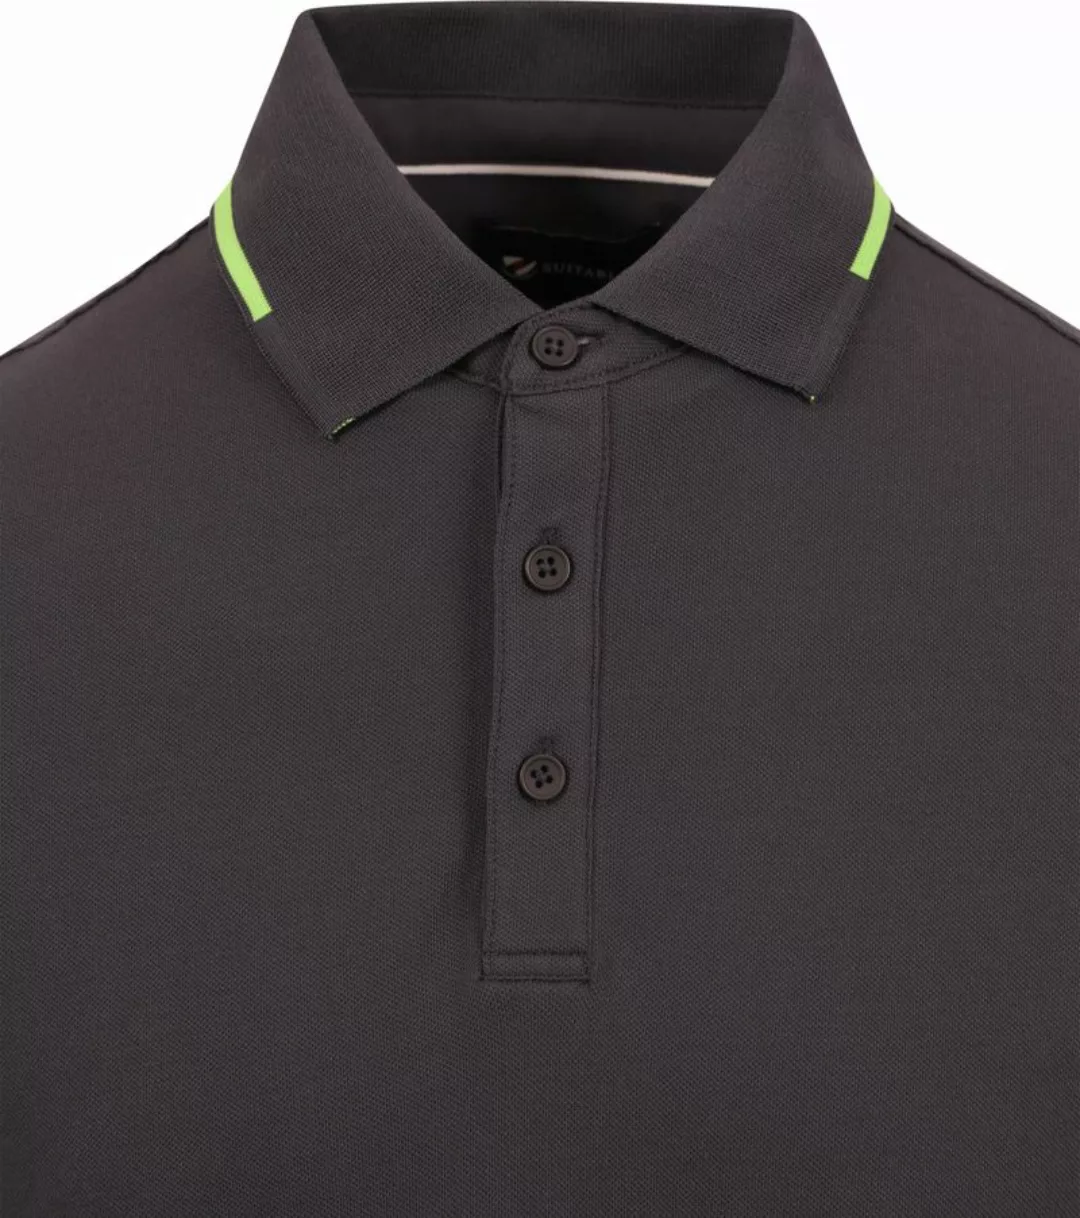 Suitable Fluo B Poloshirt Anthrazit - Größe M günstig online kaufen